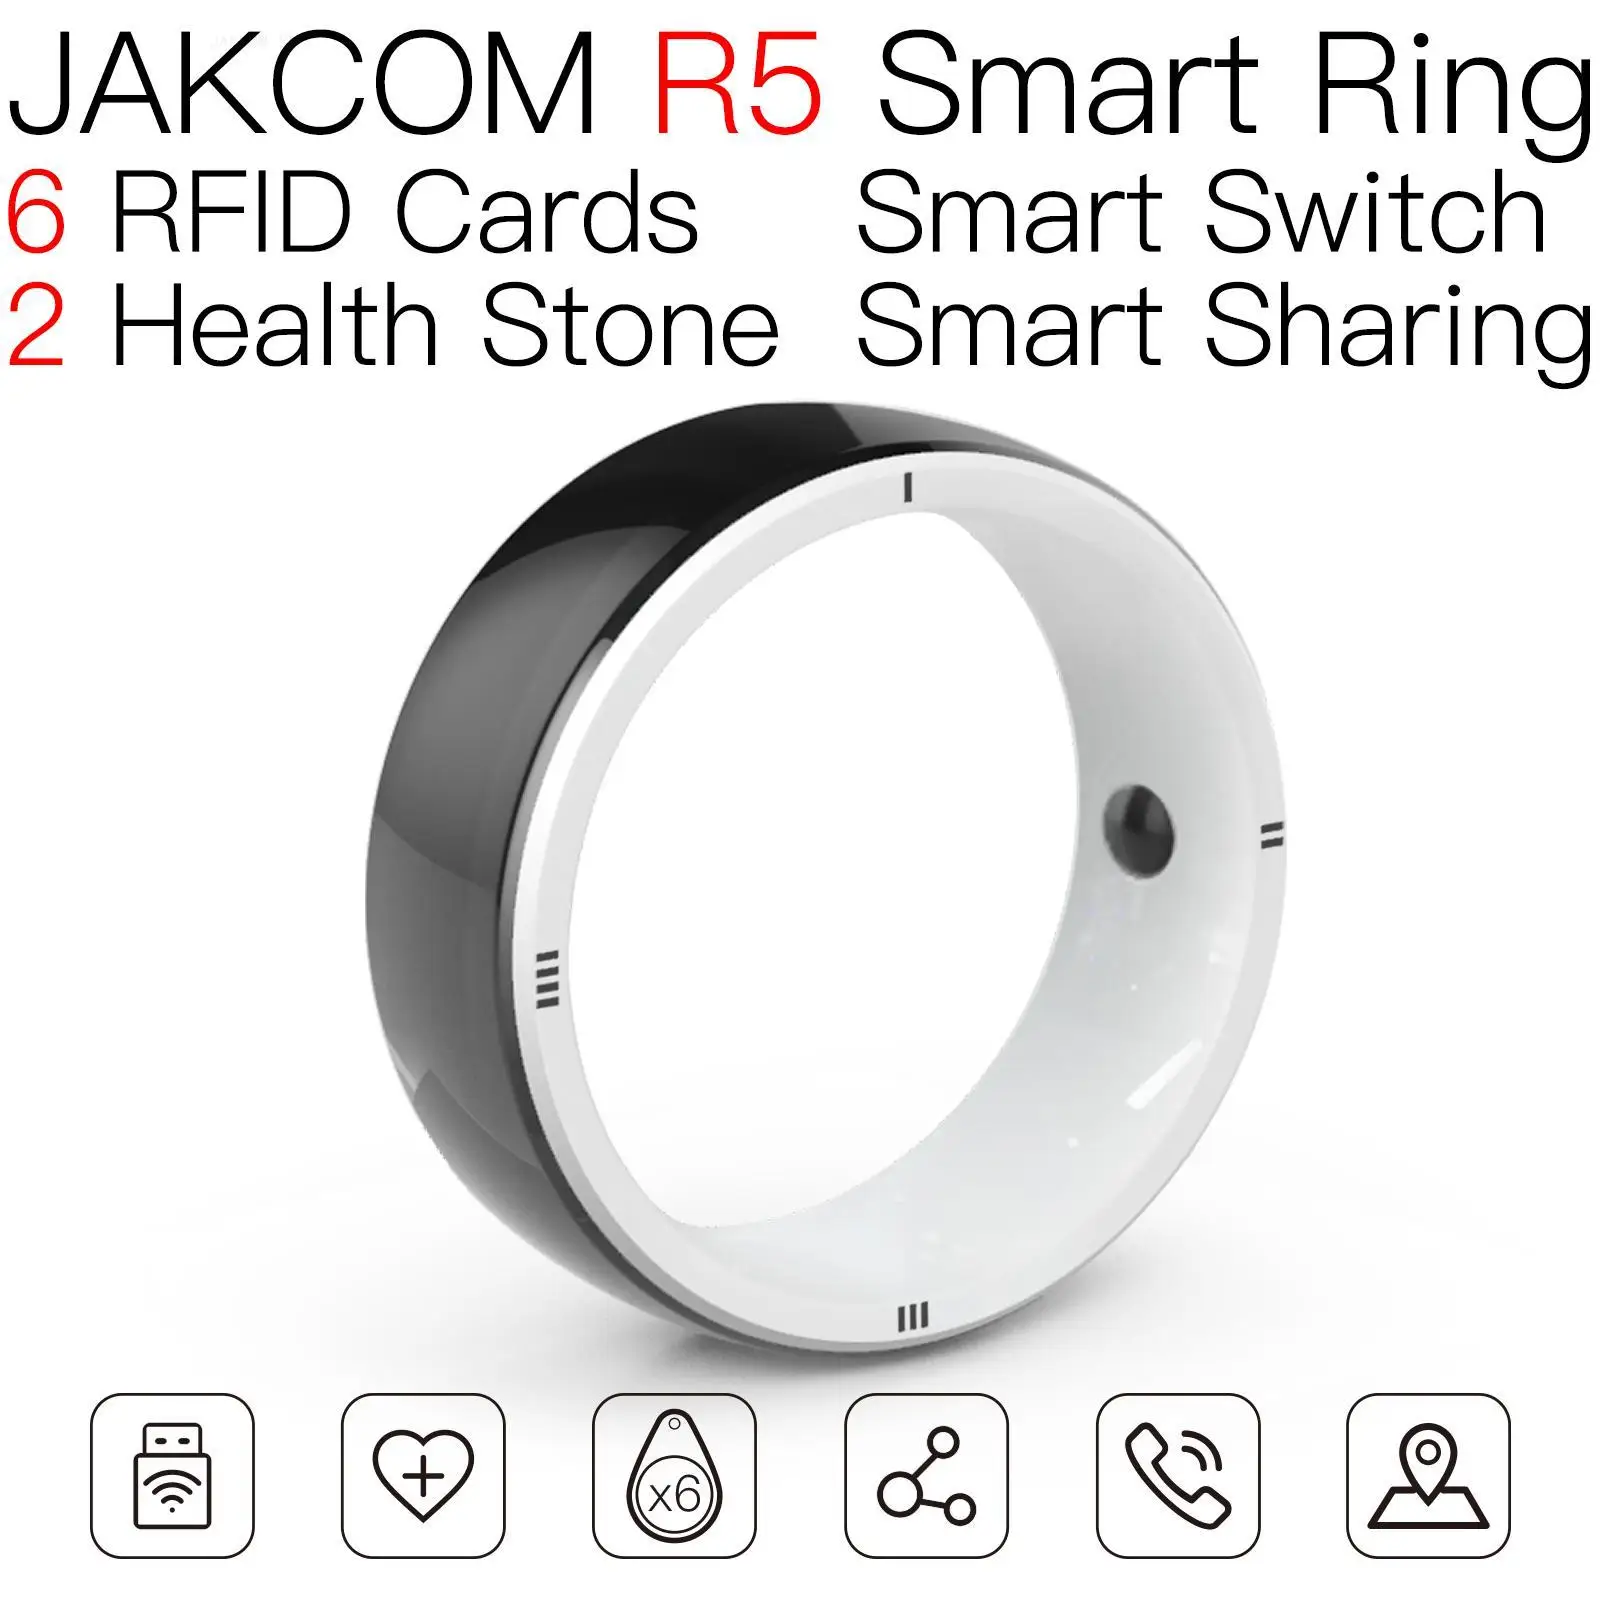 

Смарт-кольцо JAKCOM R5 лучший подарок с микрочипом для кошек анти t 125 кГц rfid записываемая бирка 100 шт. 220141 светодиодная цена 13 56